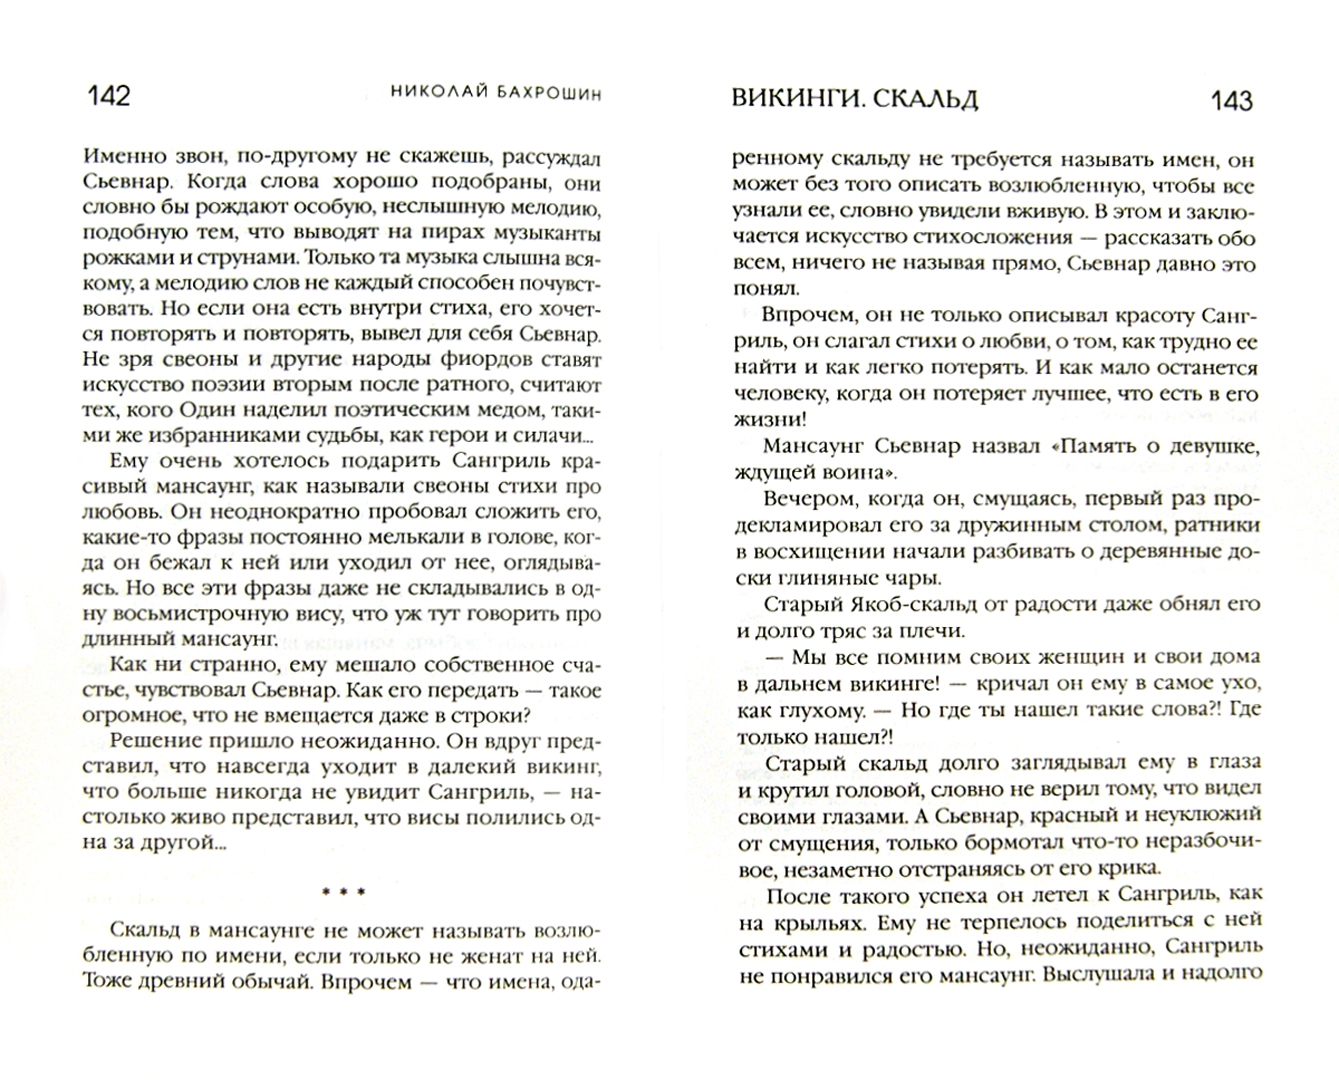 Иллюстрация 1 из 5 для Викинги. Скальд - Николай Бахрошин | Лабиринт - книги. Источник: Лабиринт